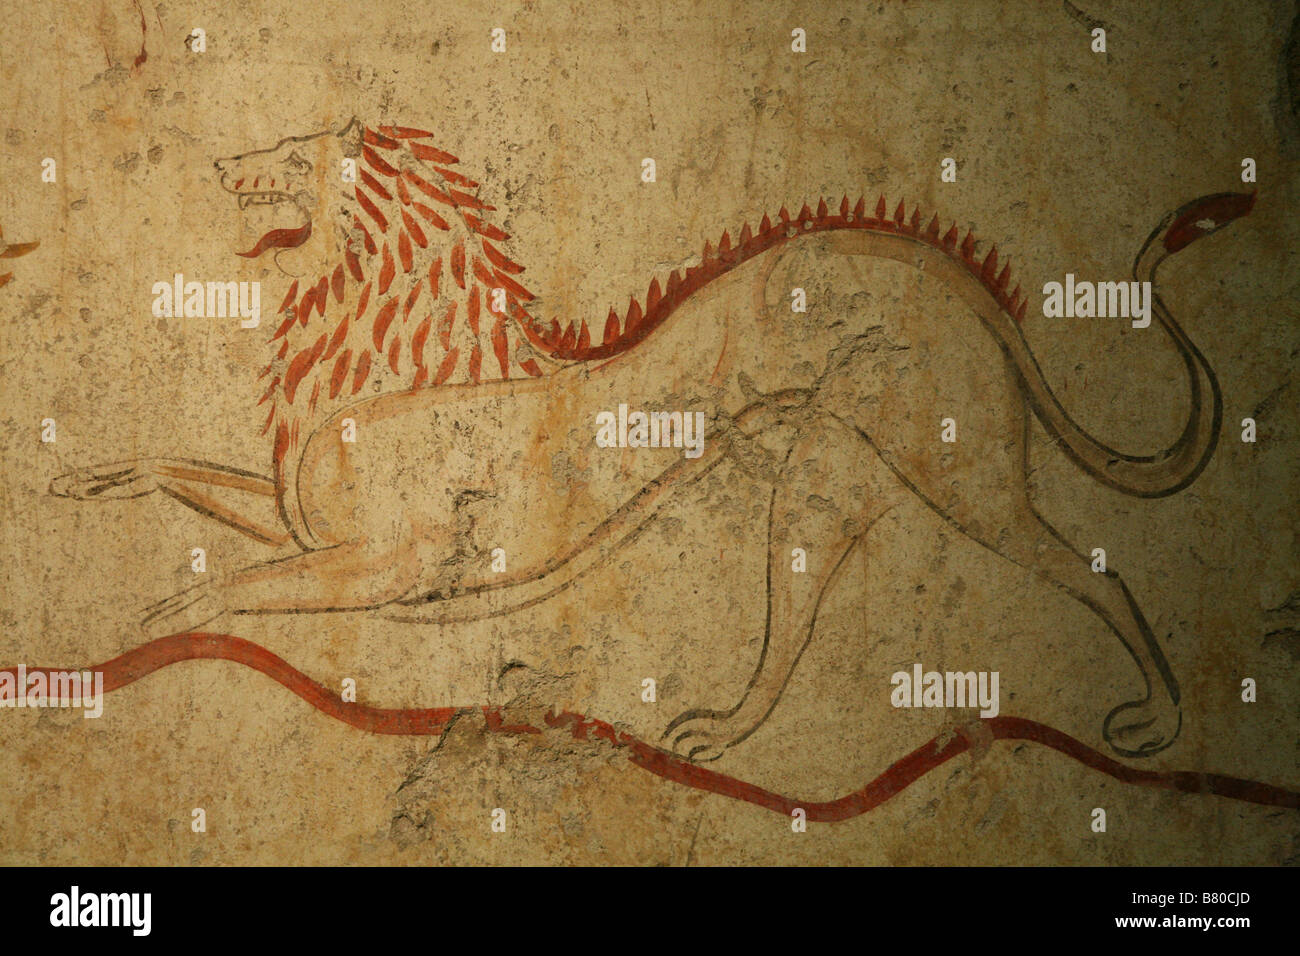 Lion. Pintura tumba romana en el museo arqueológico de Paestum, Italia. Foto de stock